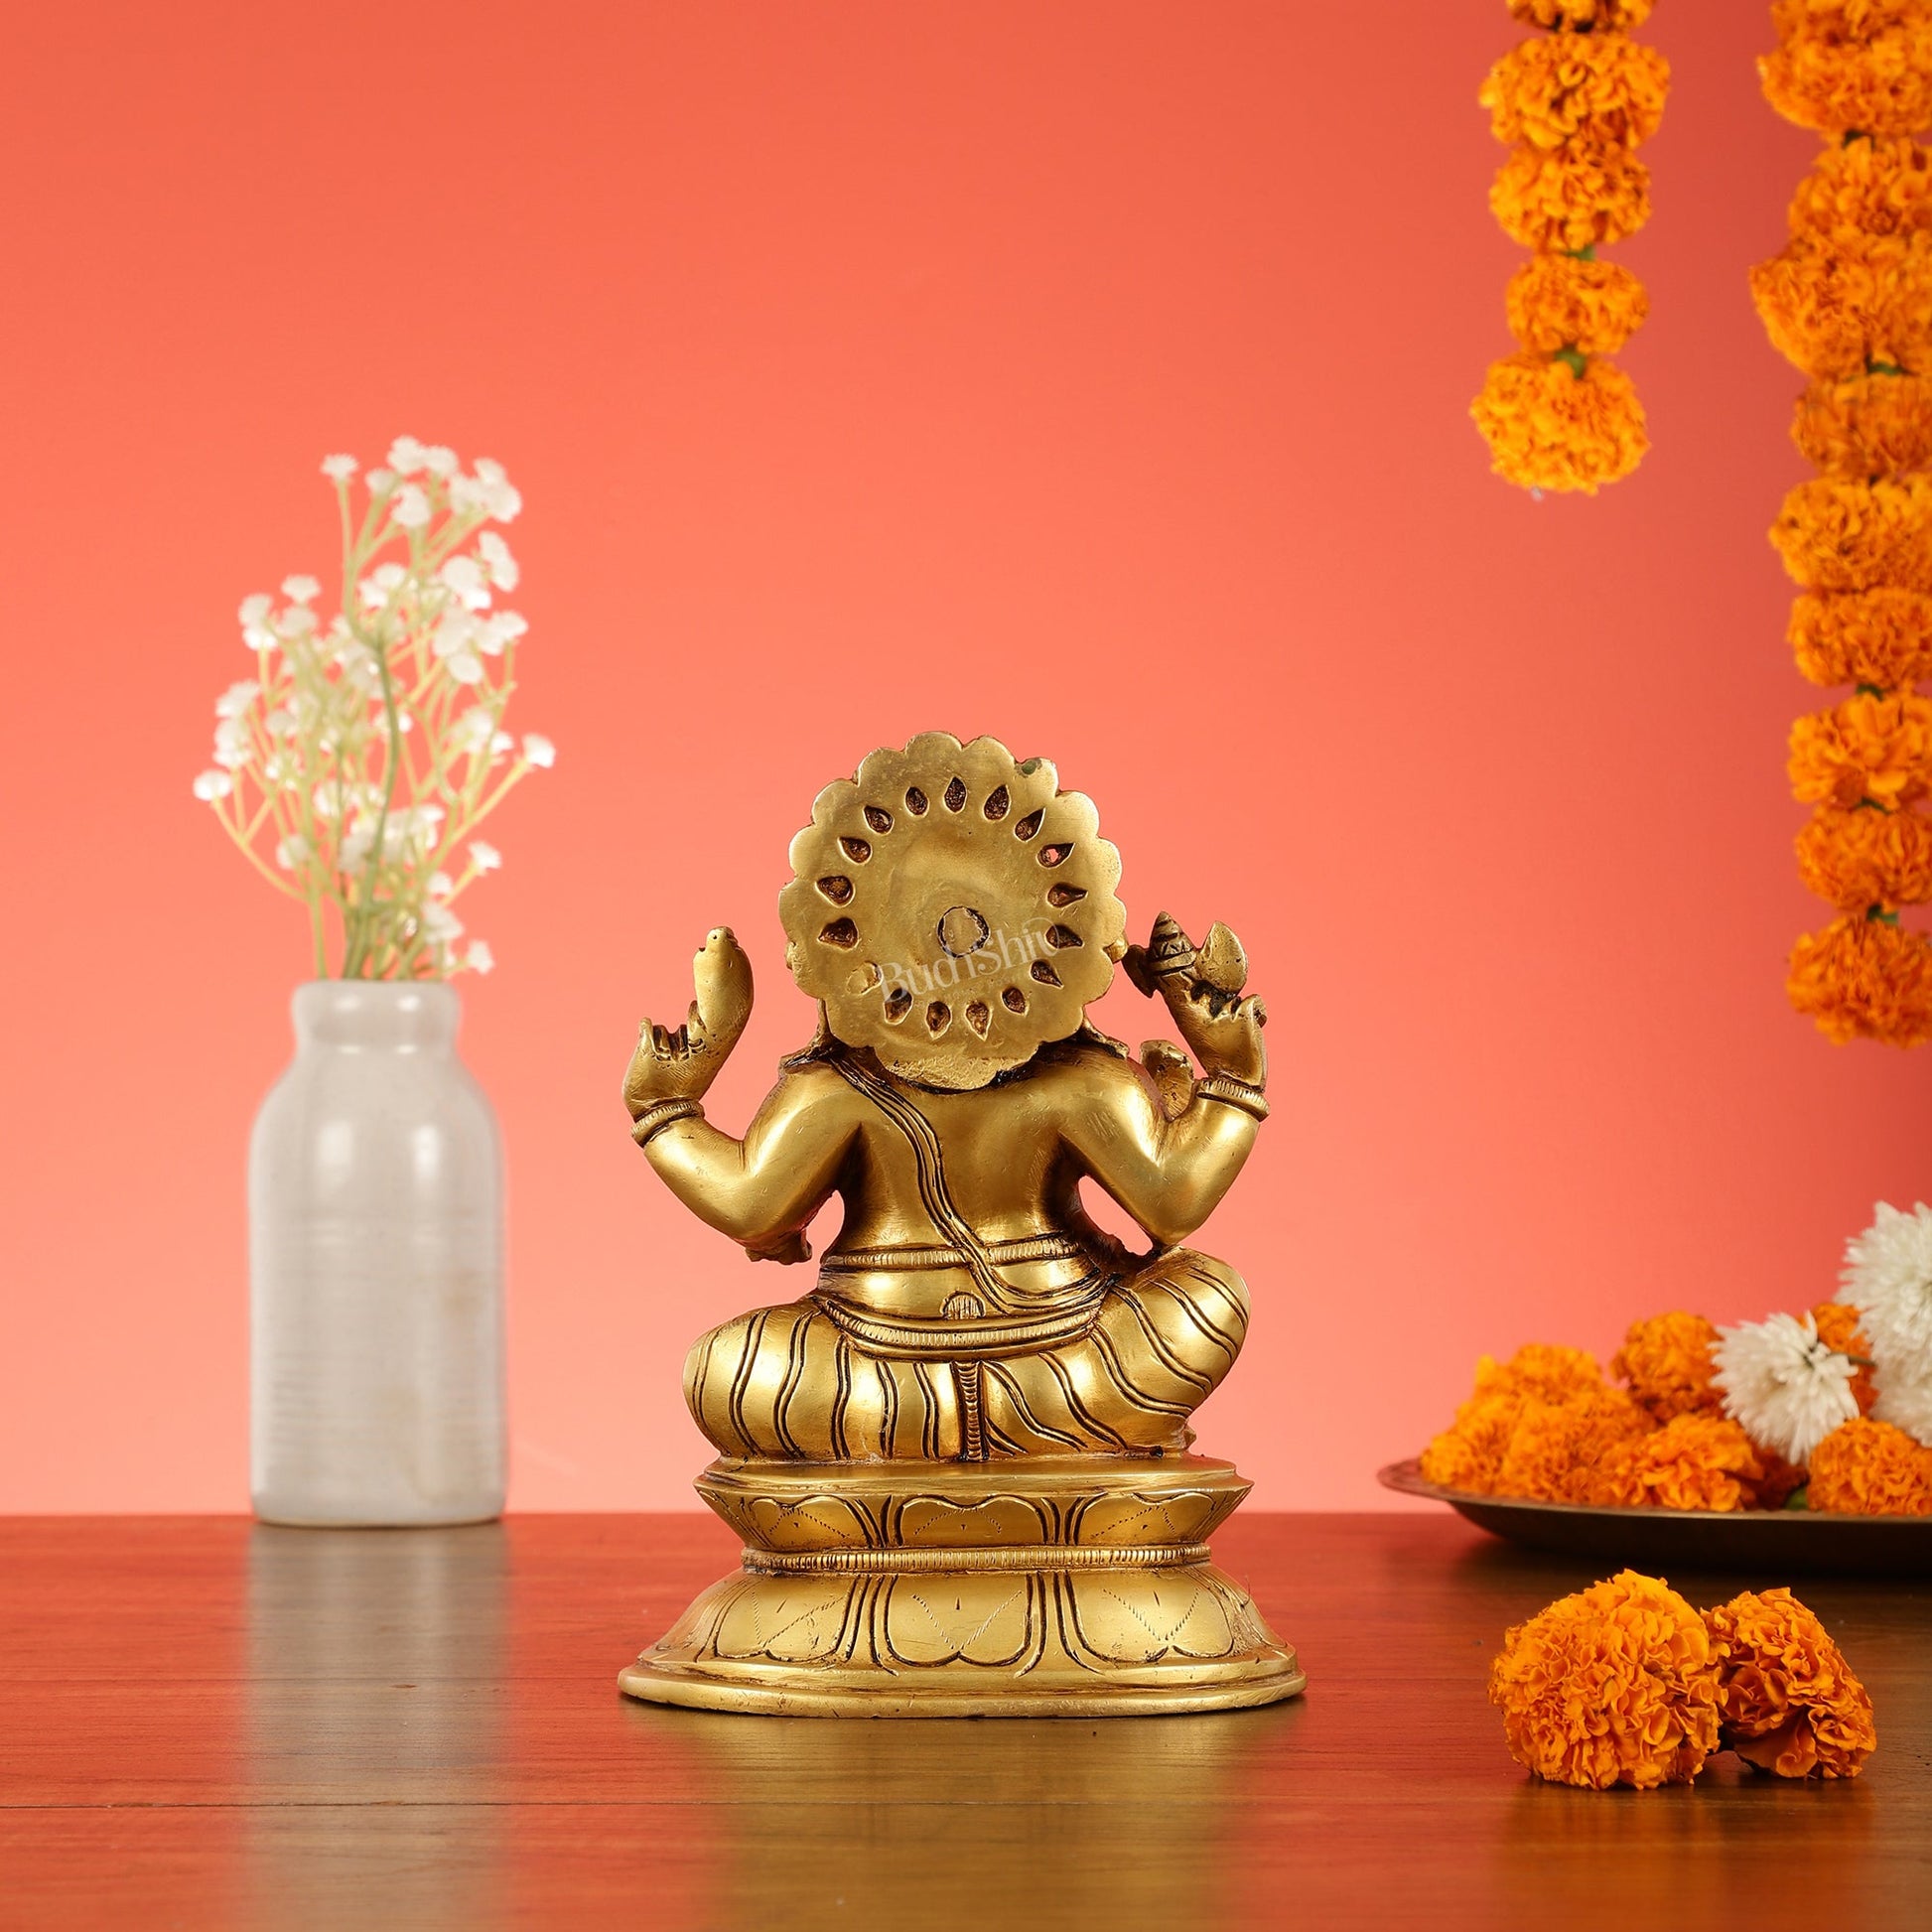 Brass Superfine Lord Ganesha Idol - 7.5 Inch - Budhshiv.com